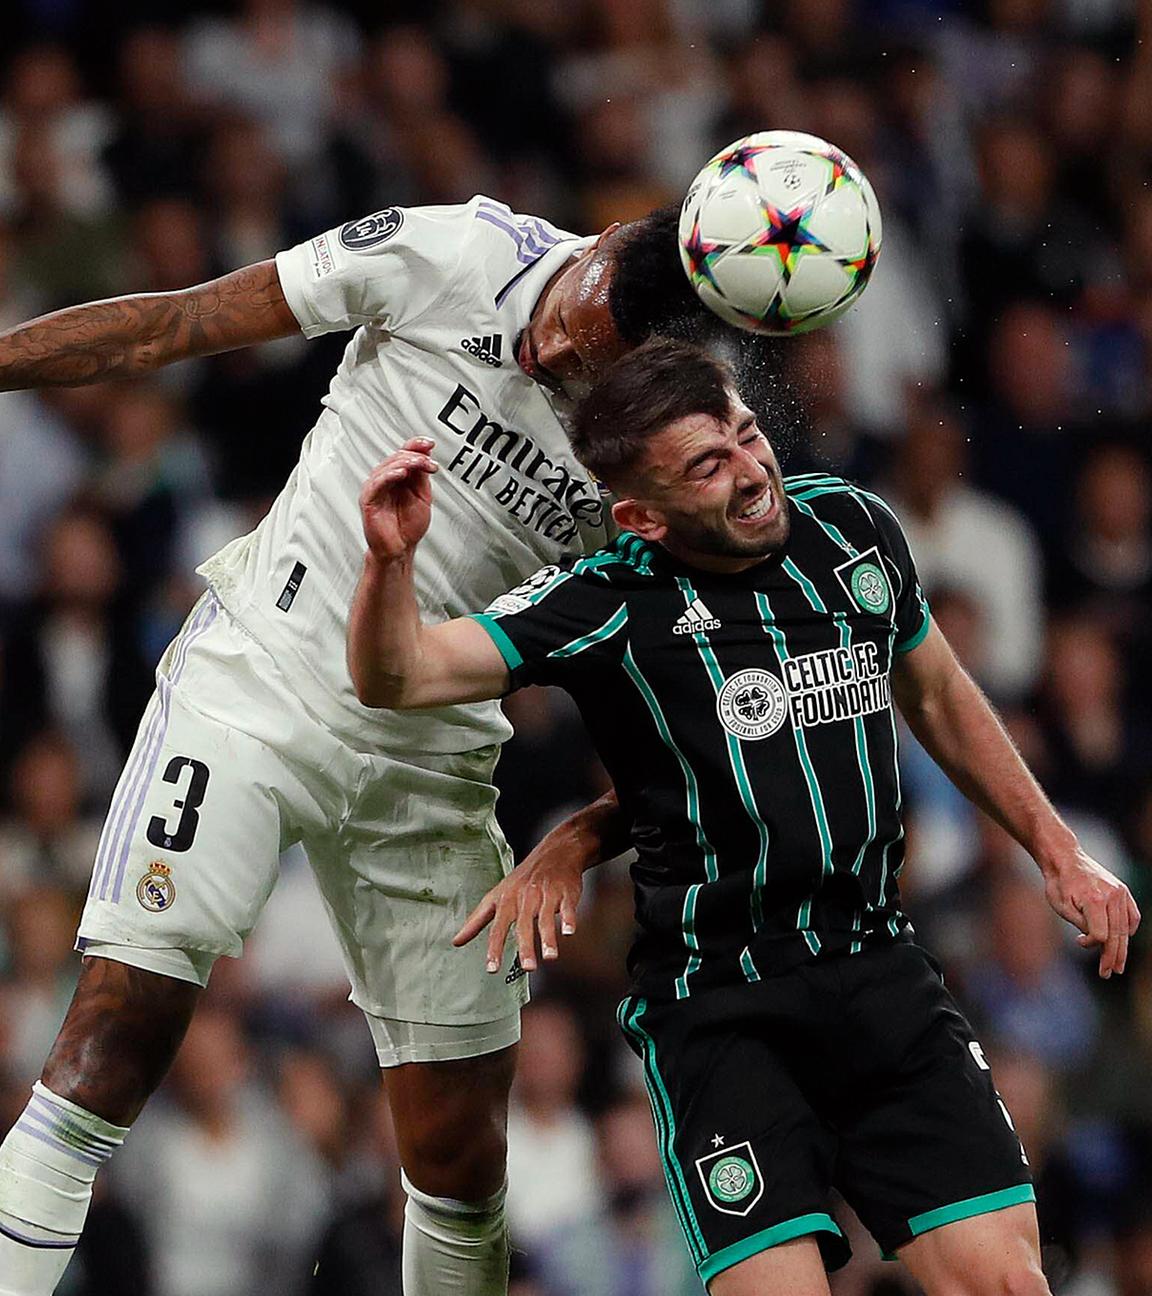 02.11.2022, Madrid: Kopfball von Miltao (Real Madrid) im Champions-League-Spiel gegen Celtics Glasgow